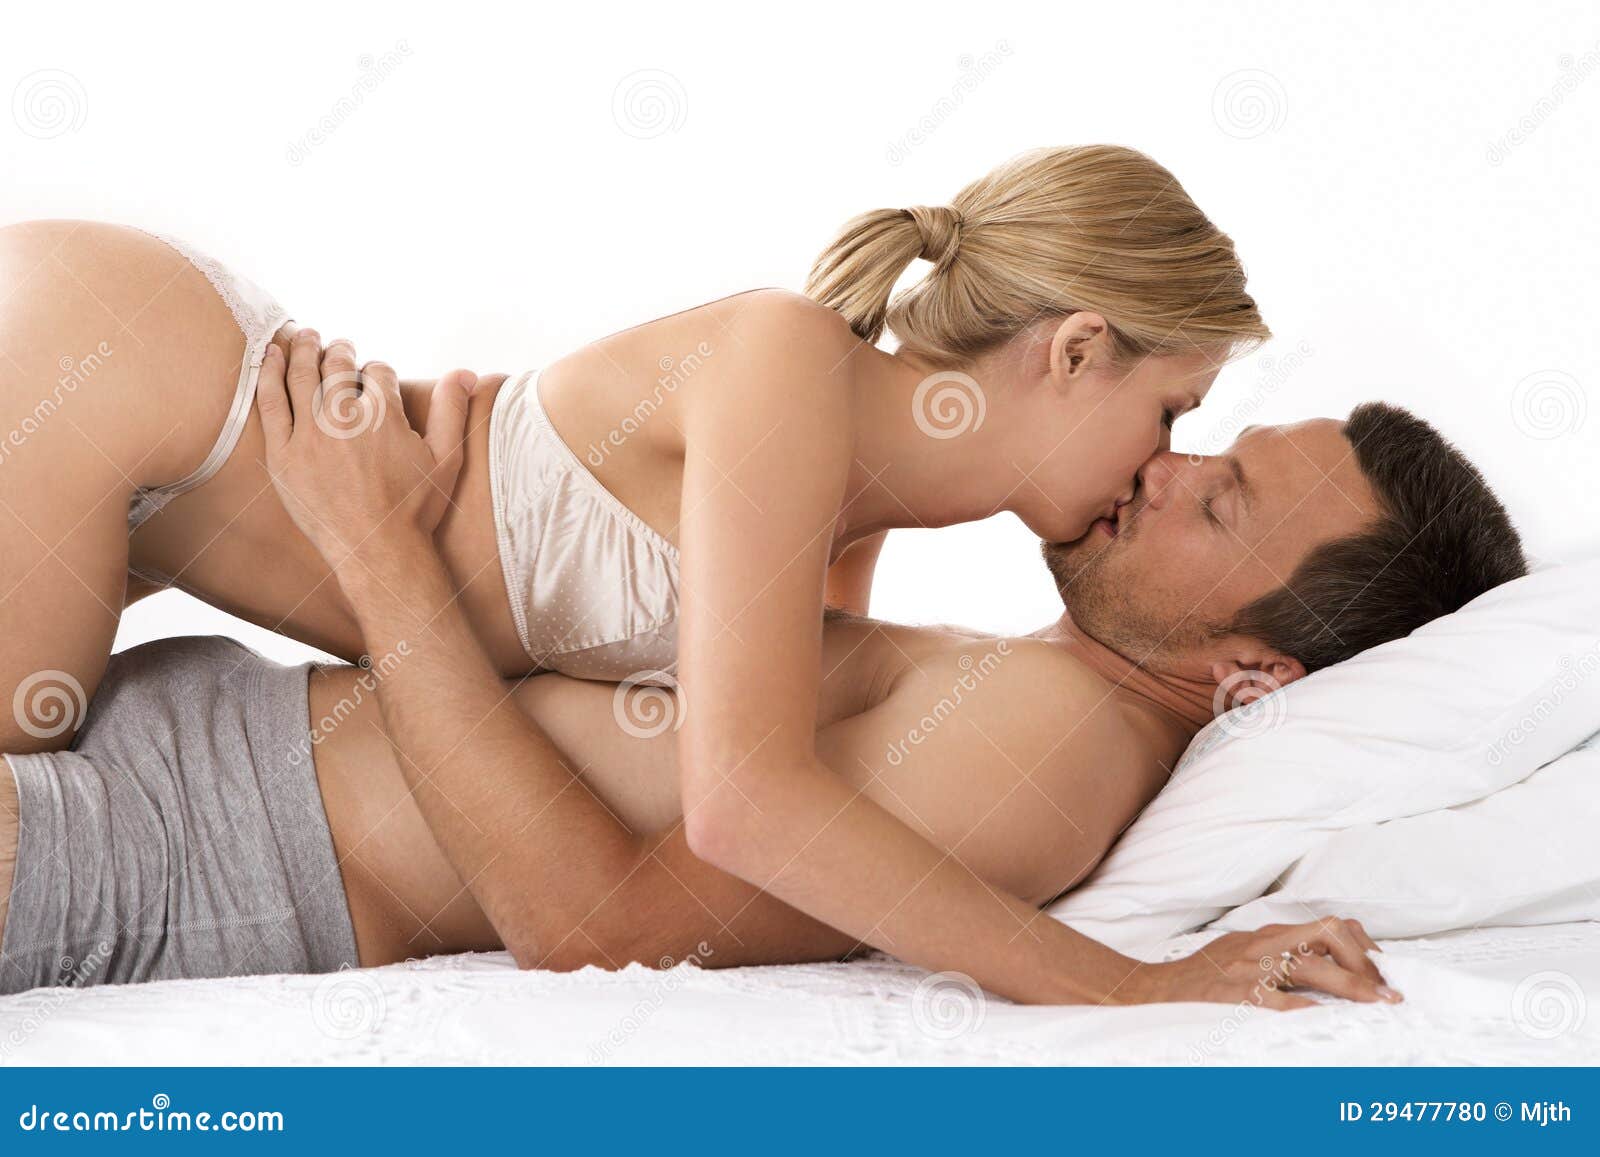 Сексуальные Фото На Кровати